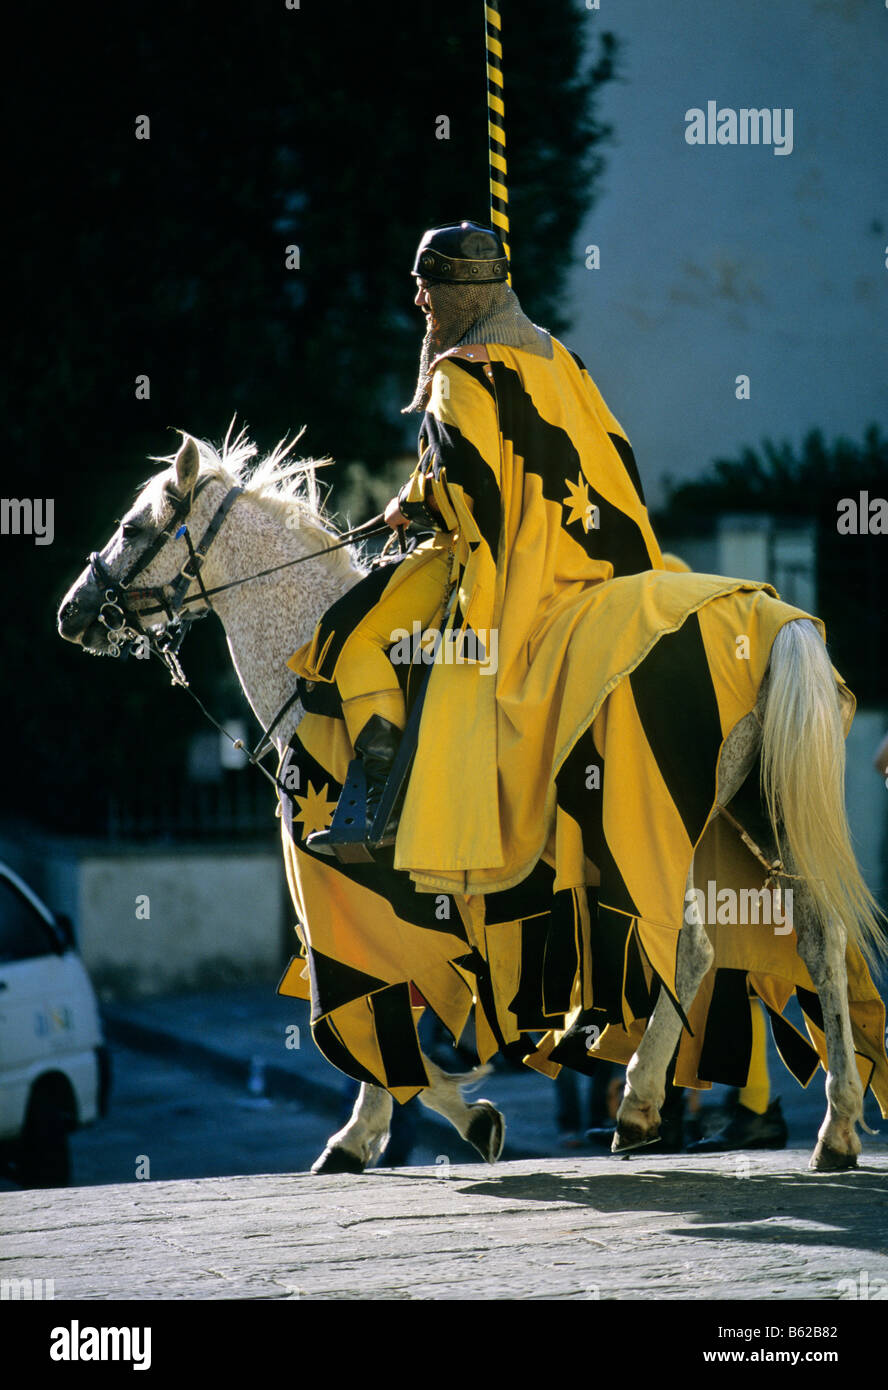 Cavaliere a cavallo nella storica Saracen Joust di Arezzo o Giostra del Saracino, in provincia di Arezzo, Toscana, Italia, Eur Foto Stock